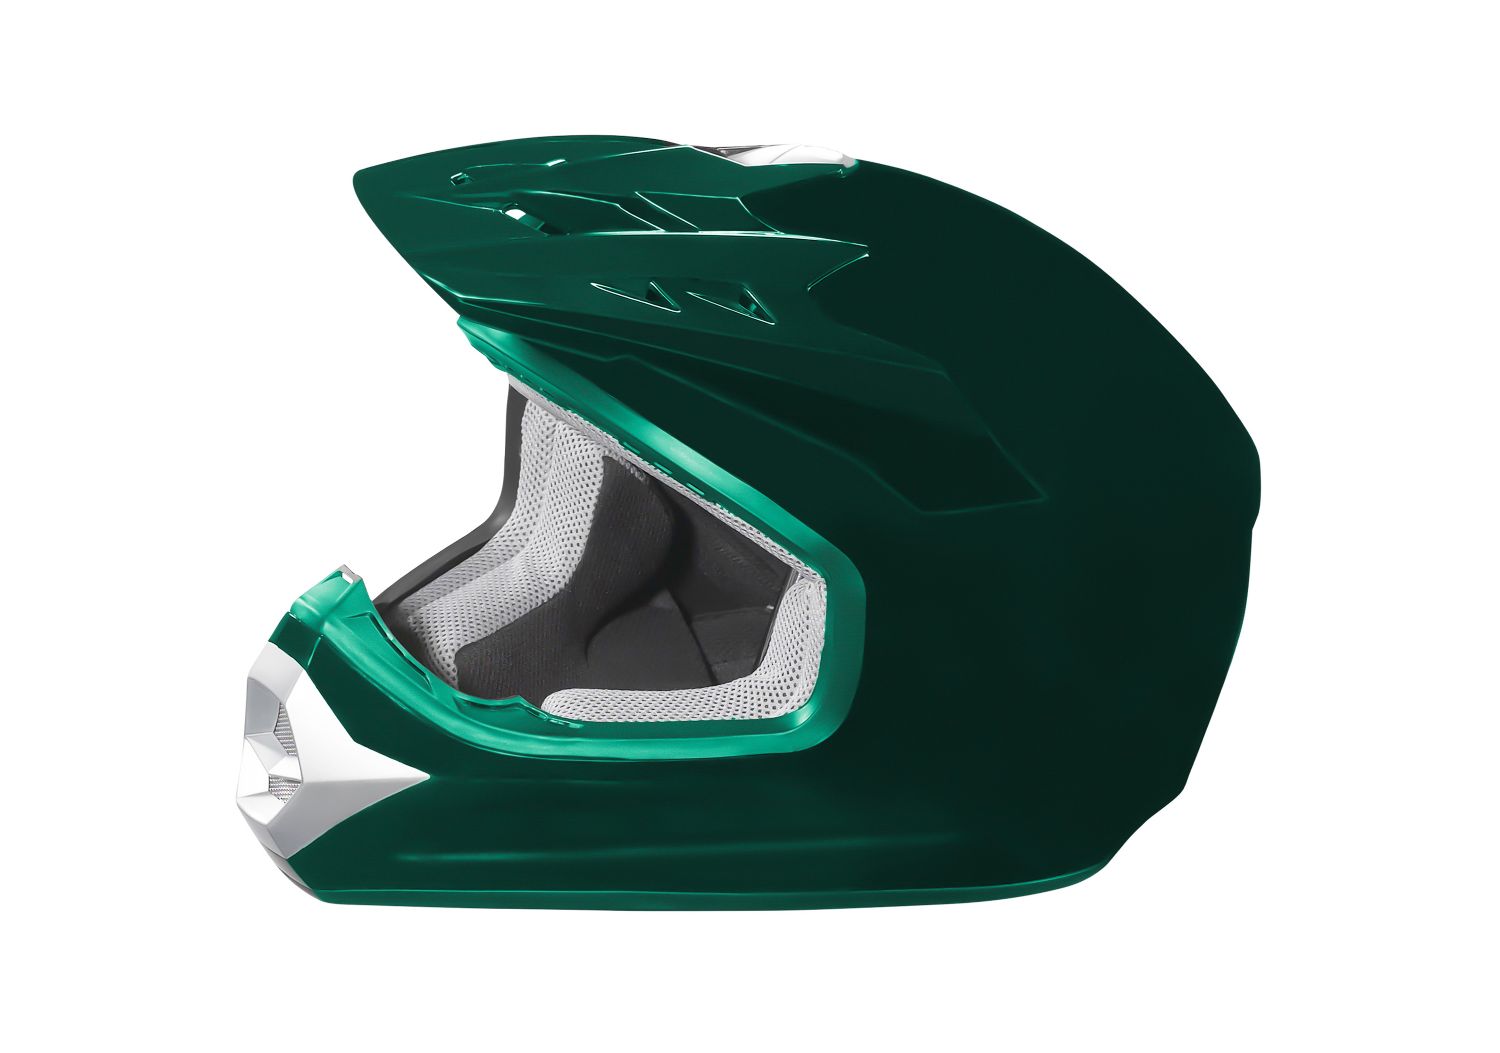 Green painted helmet